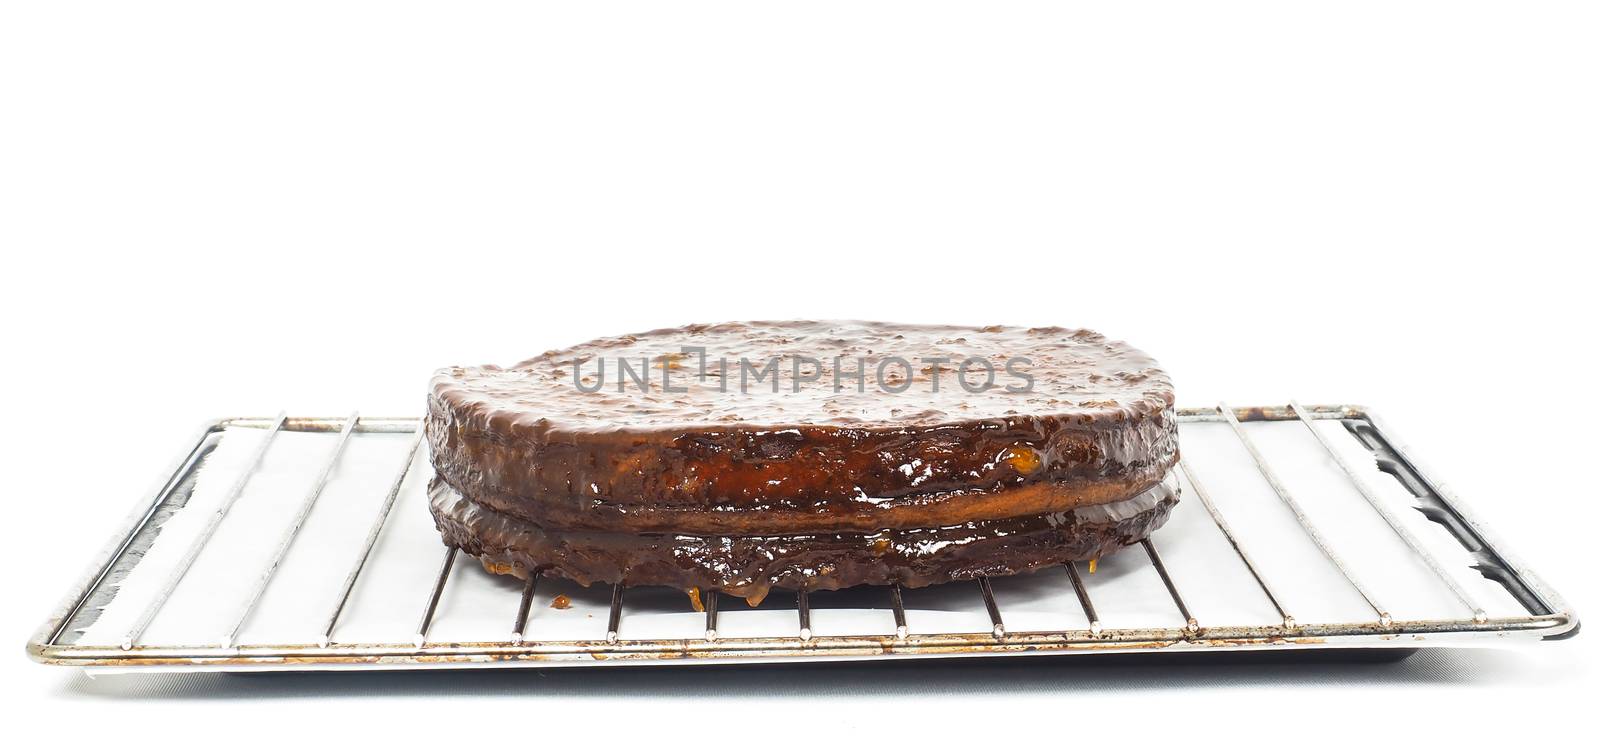 Half stage on sacher torte chocolate cake on grid before chocola by Arvebettum